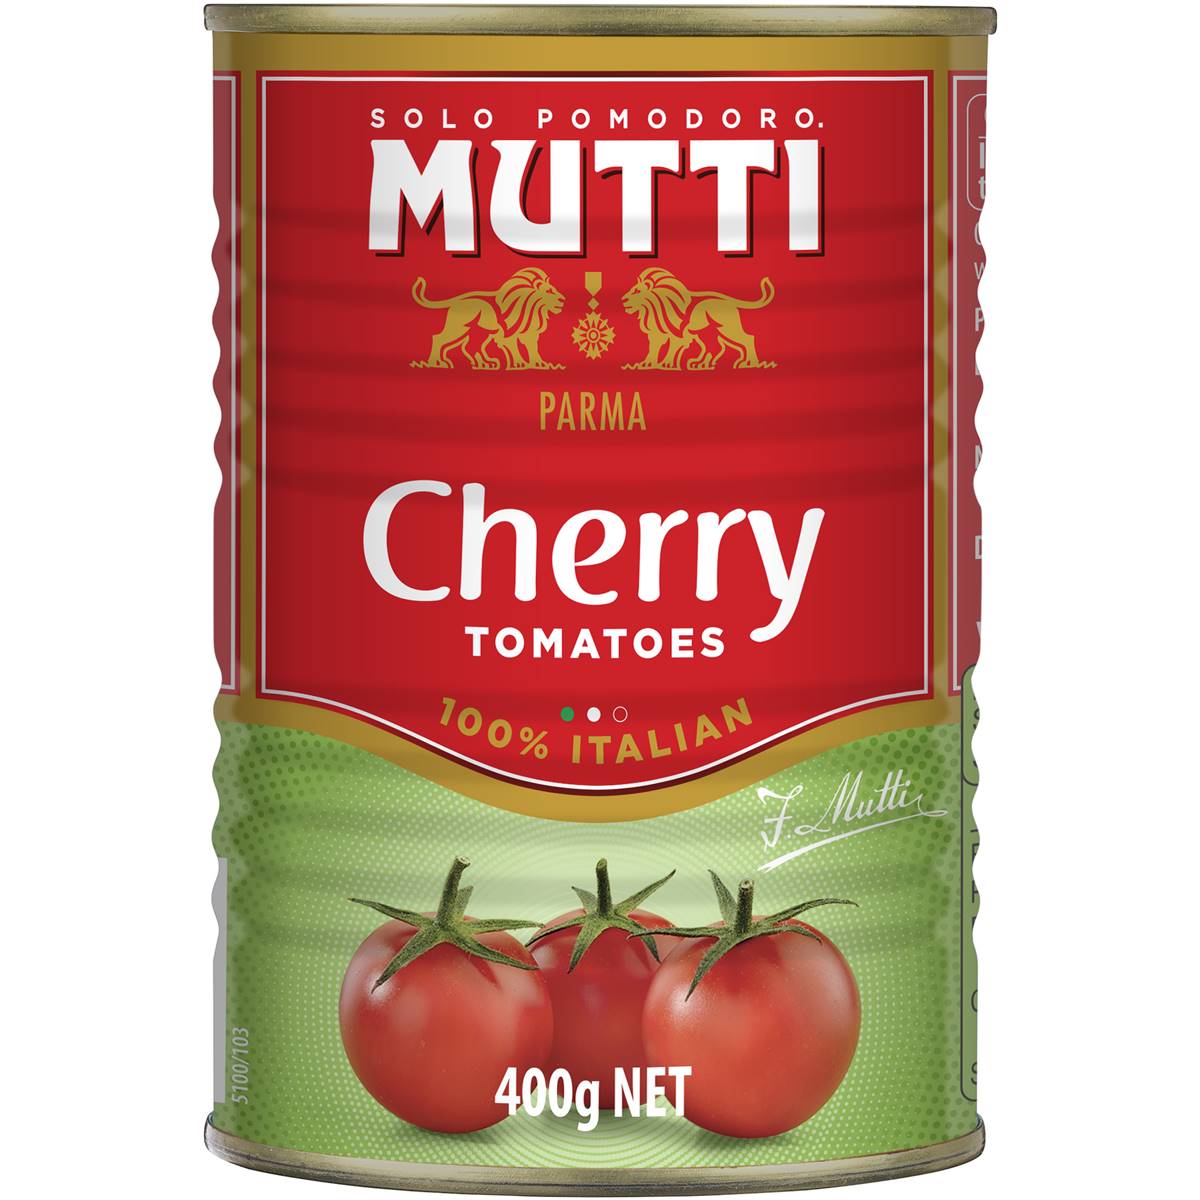 Mutti Tomatoes Cherry 400g